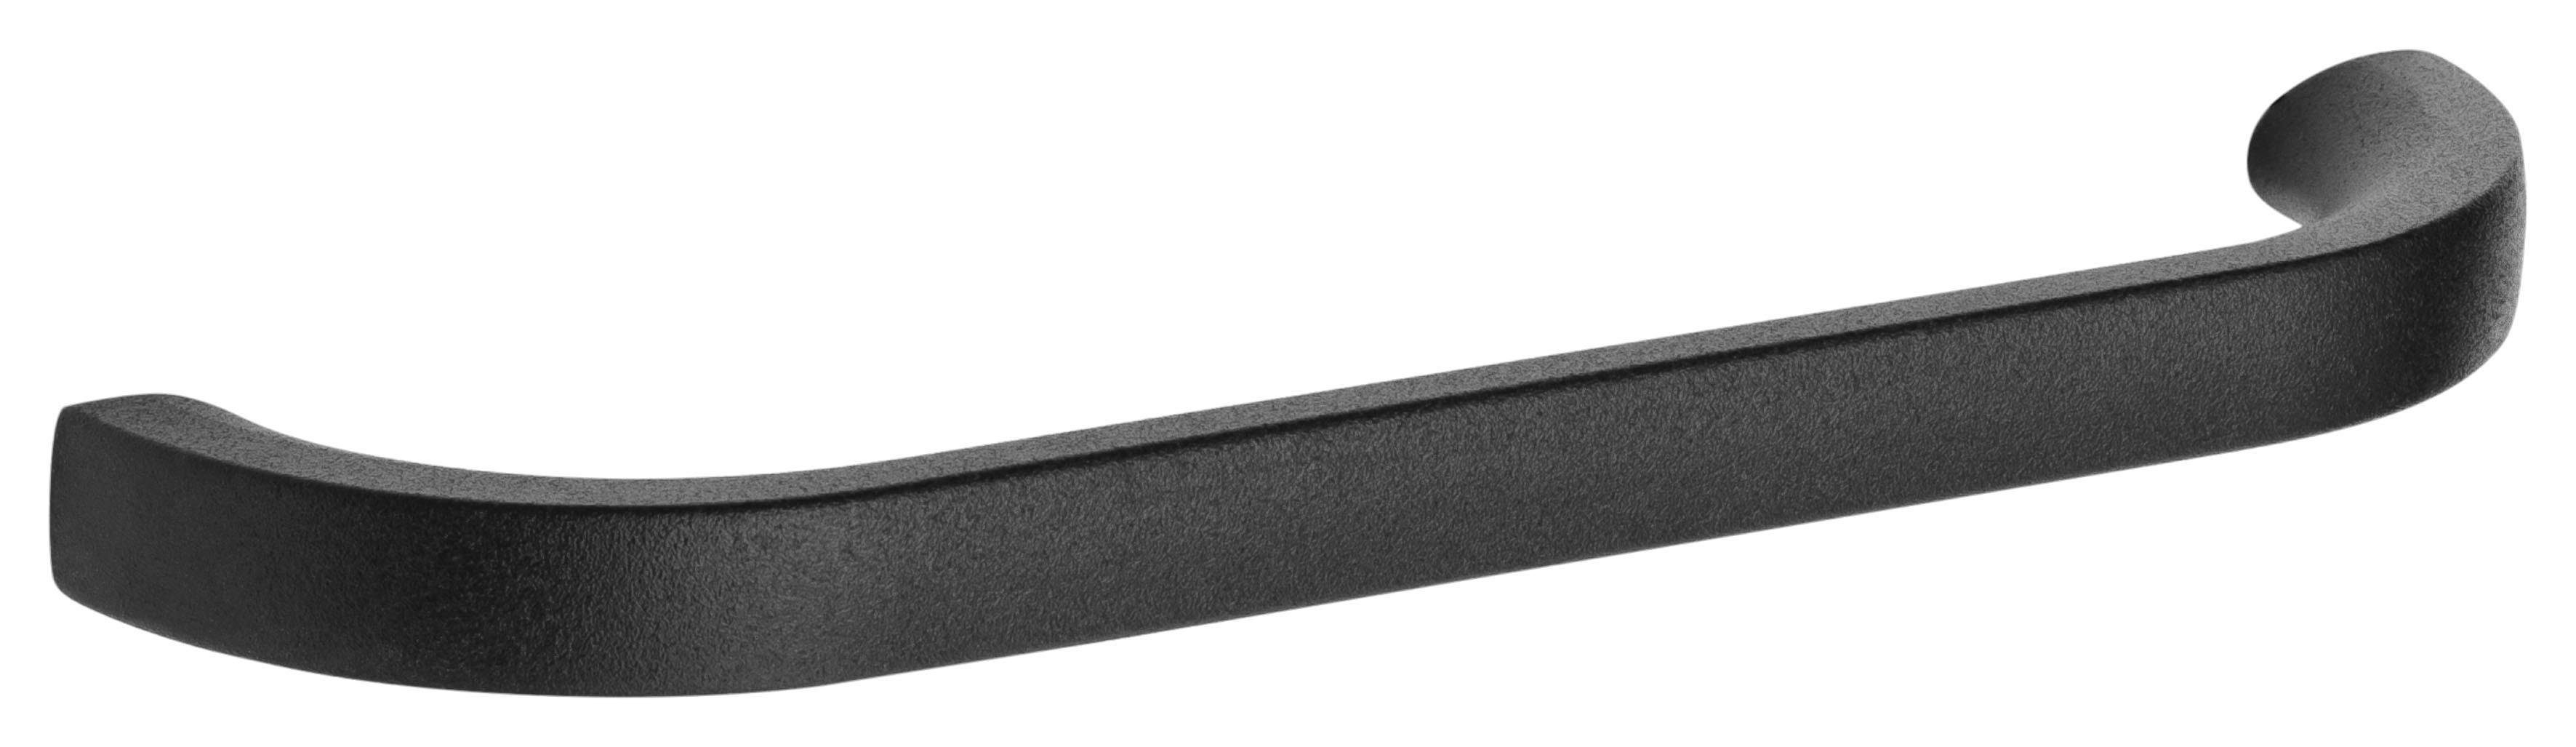 OPTIFIT basaltgrau Breite und Elga Metallgriff, | 60x60 basaltgrau/basaltgrau cm Eckhängeschrank mit Soft-Close-Funktion